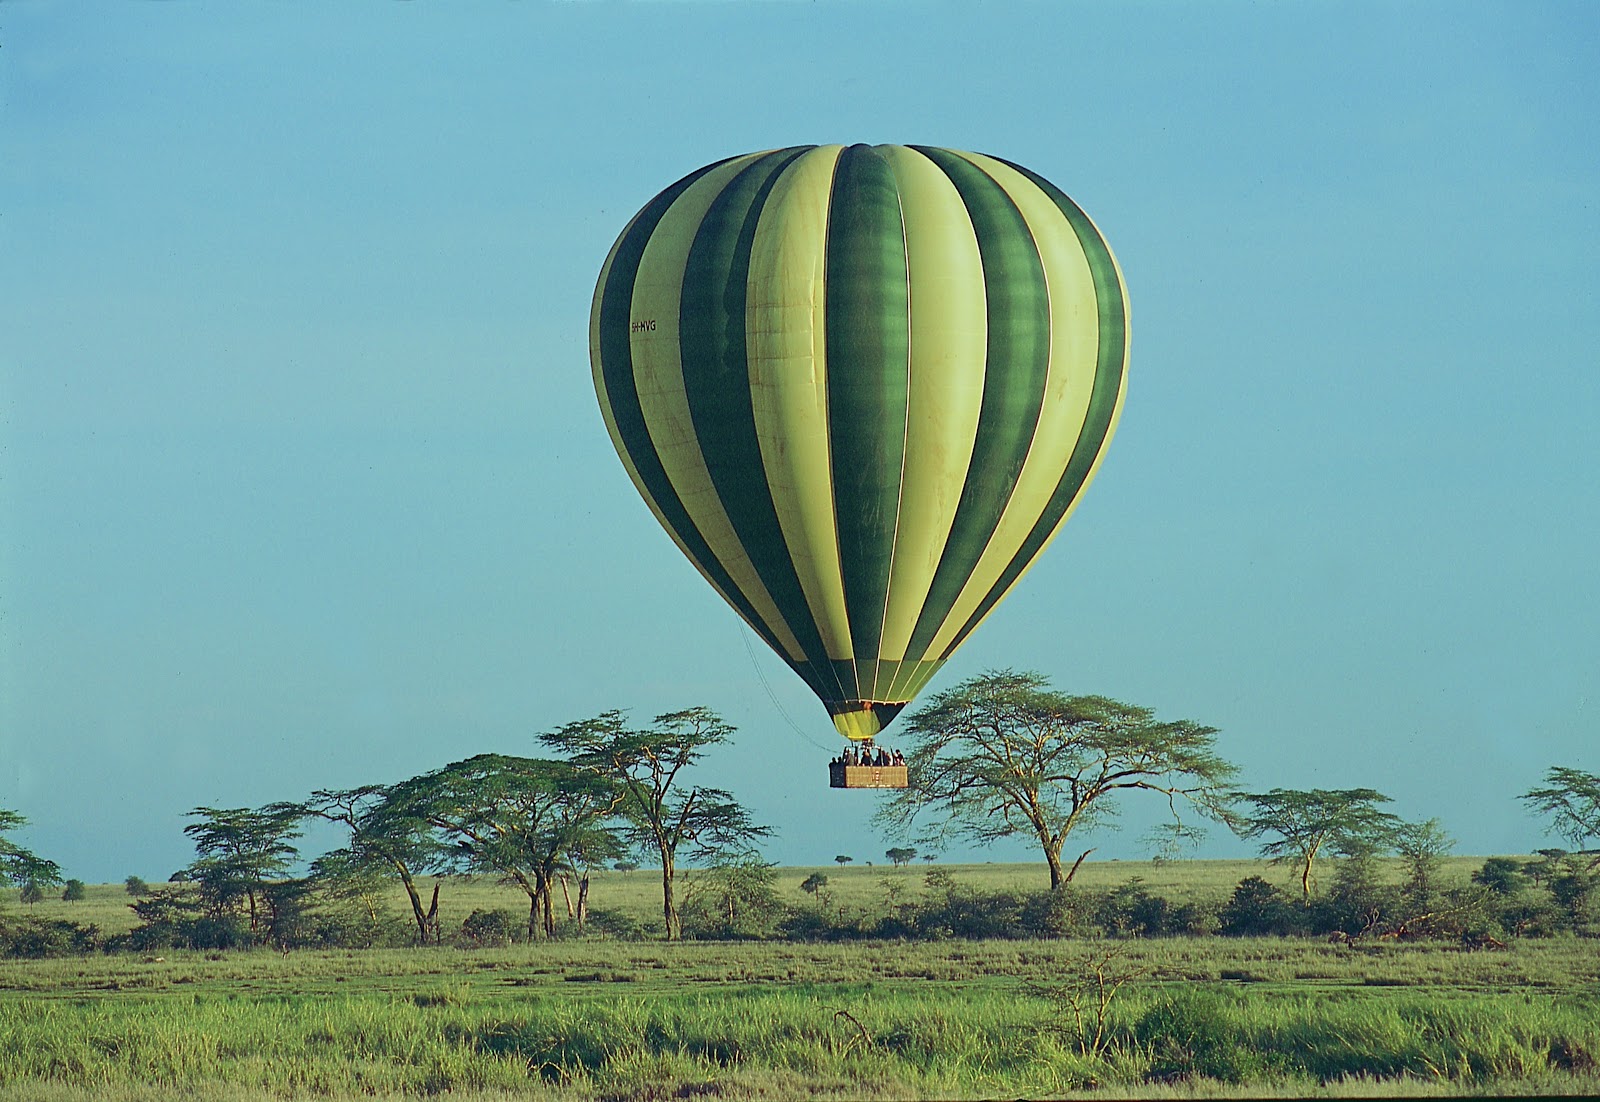 http://2.bp.blogspot.com/-HIB-ojNKjfI/UAZ0thToRQI/AAAAAAAAAUs/QbuYNxEySO4/s1600/04+-+Ballooning+in+the+Serengeti.jpg